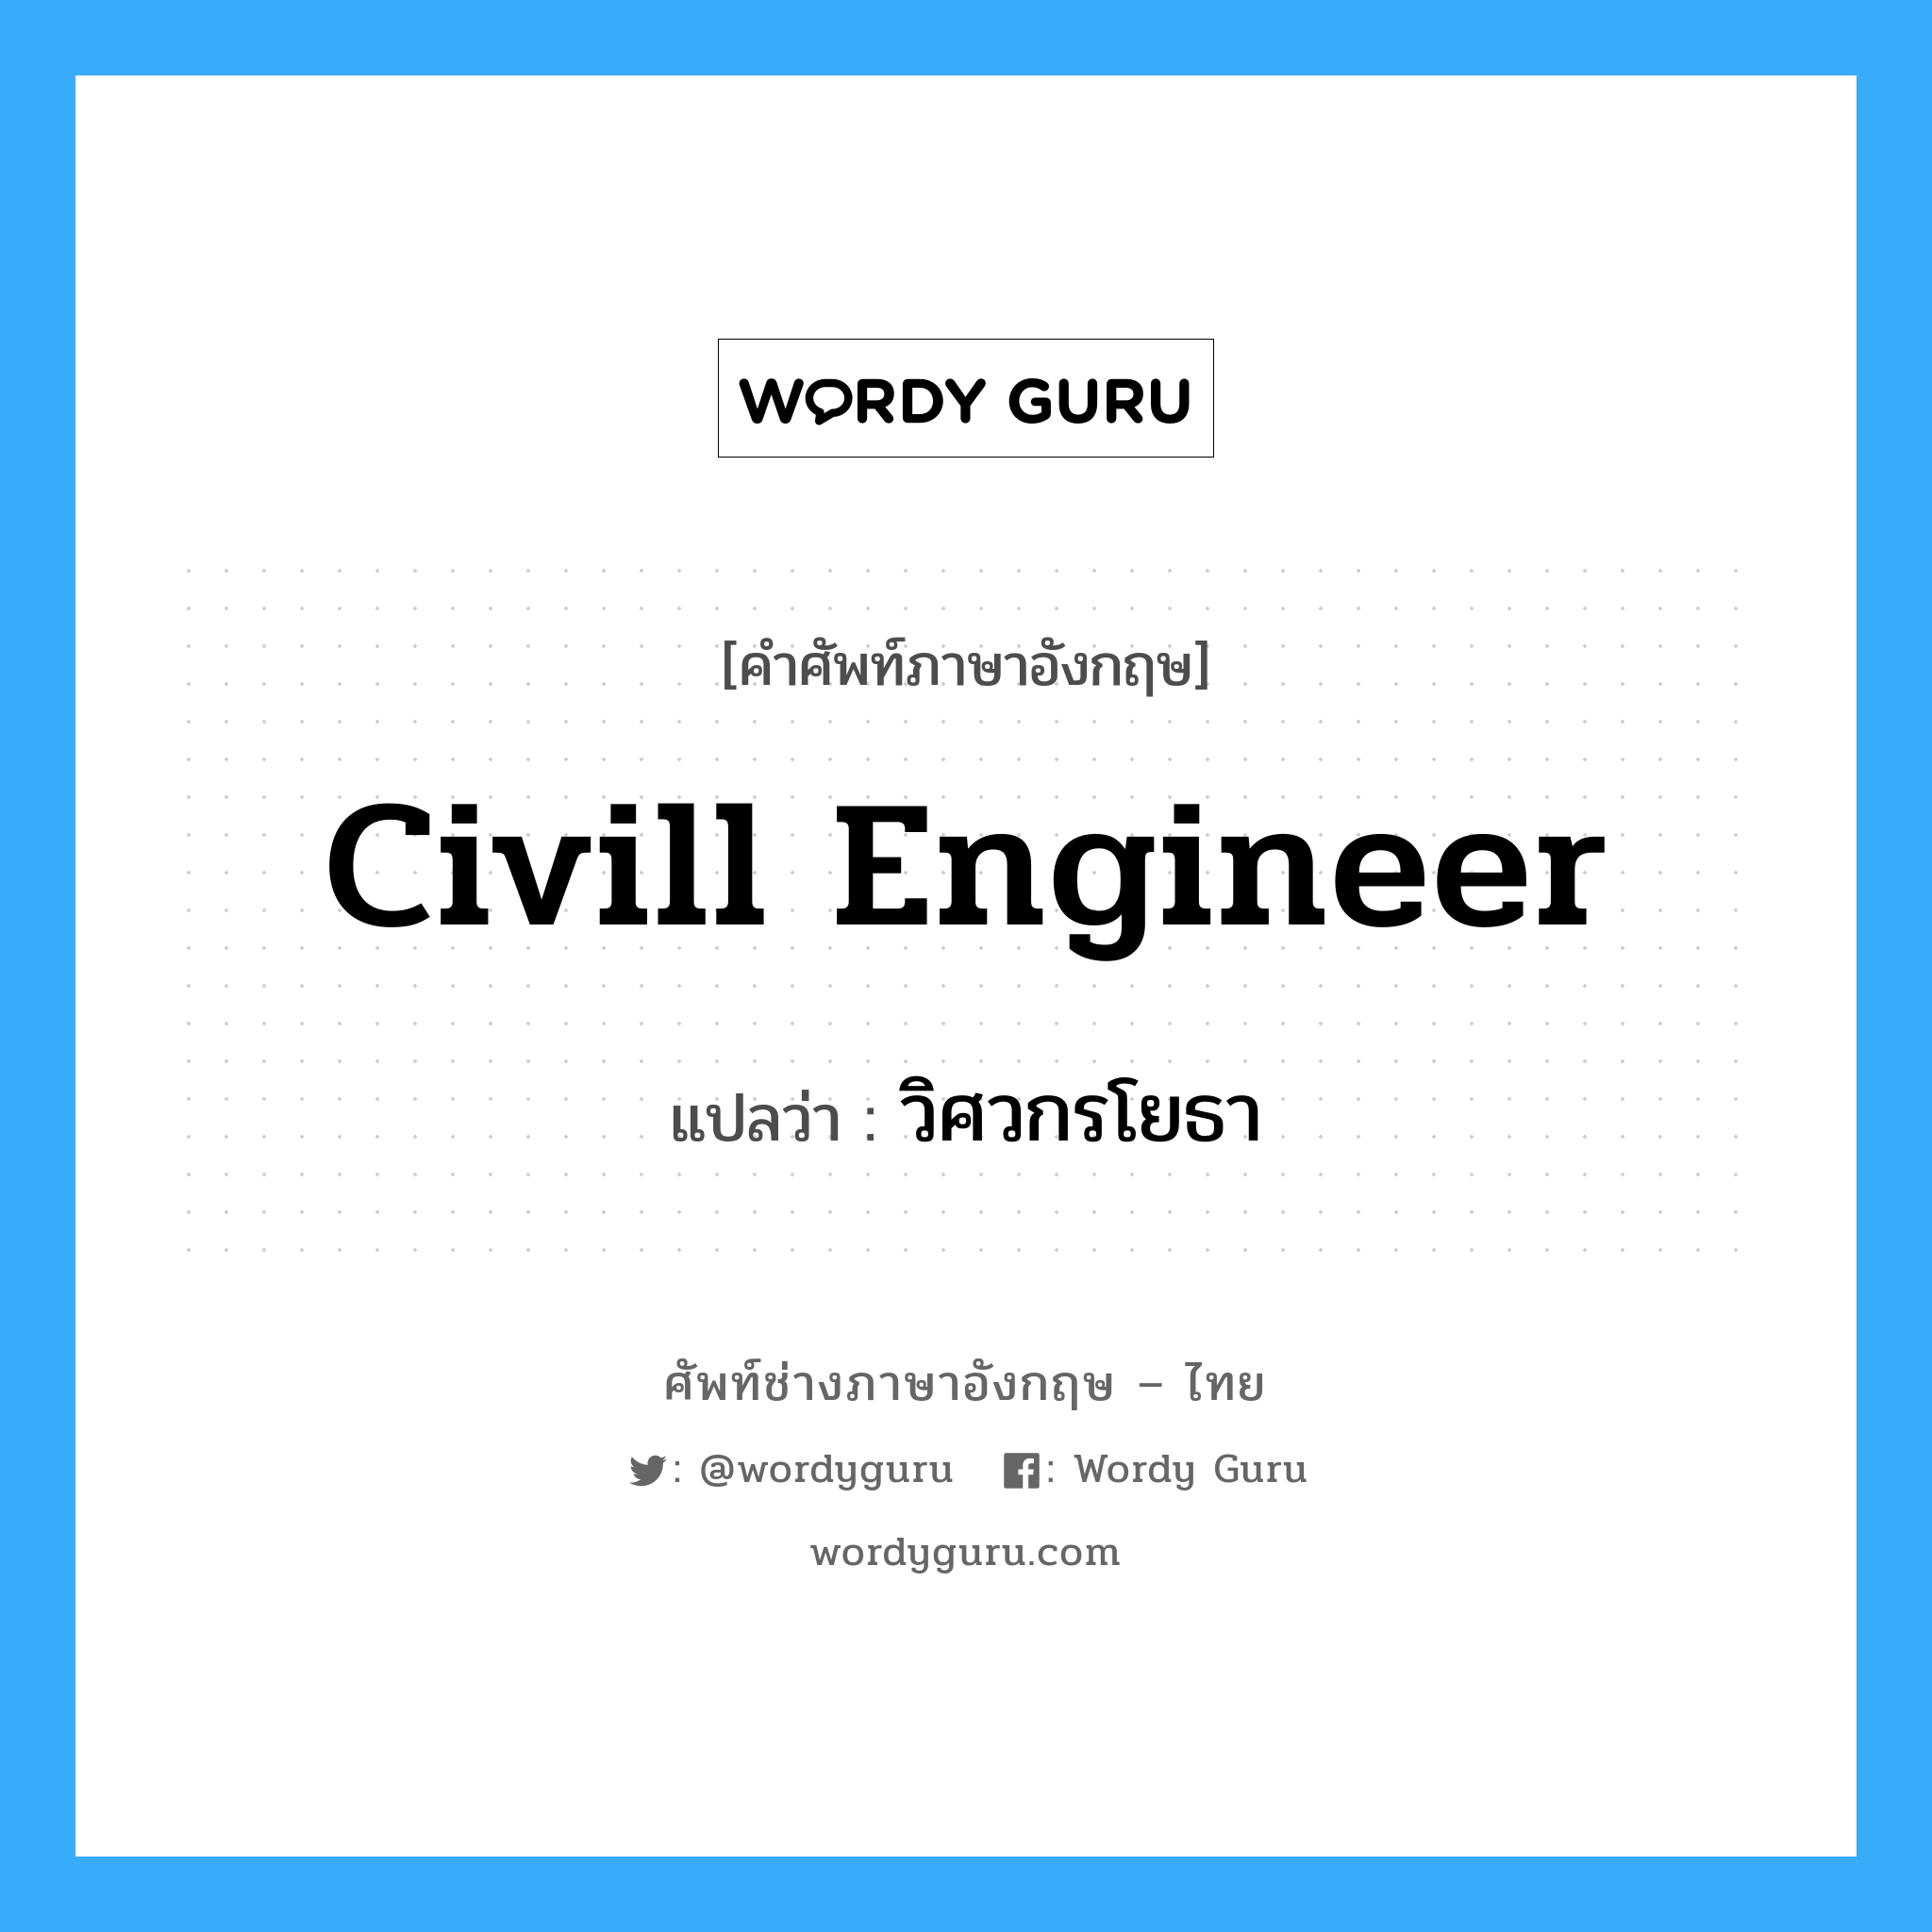 civill engineer แปลว่า?, คำศัพท์ช่างภาษาอังกฤษ - ไทย civill engineer คำศัพท์ภาษาอังกฤษ civill engineer แปลว่า วิศวกรโยธา